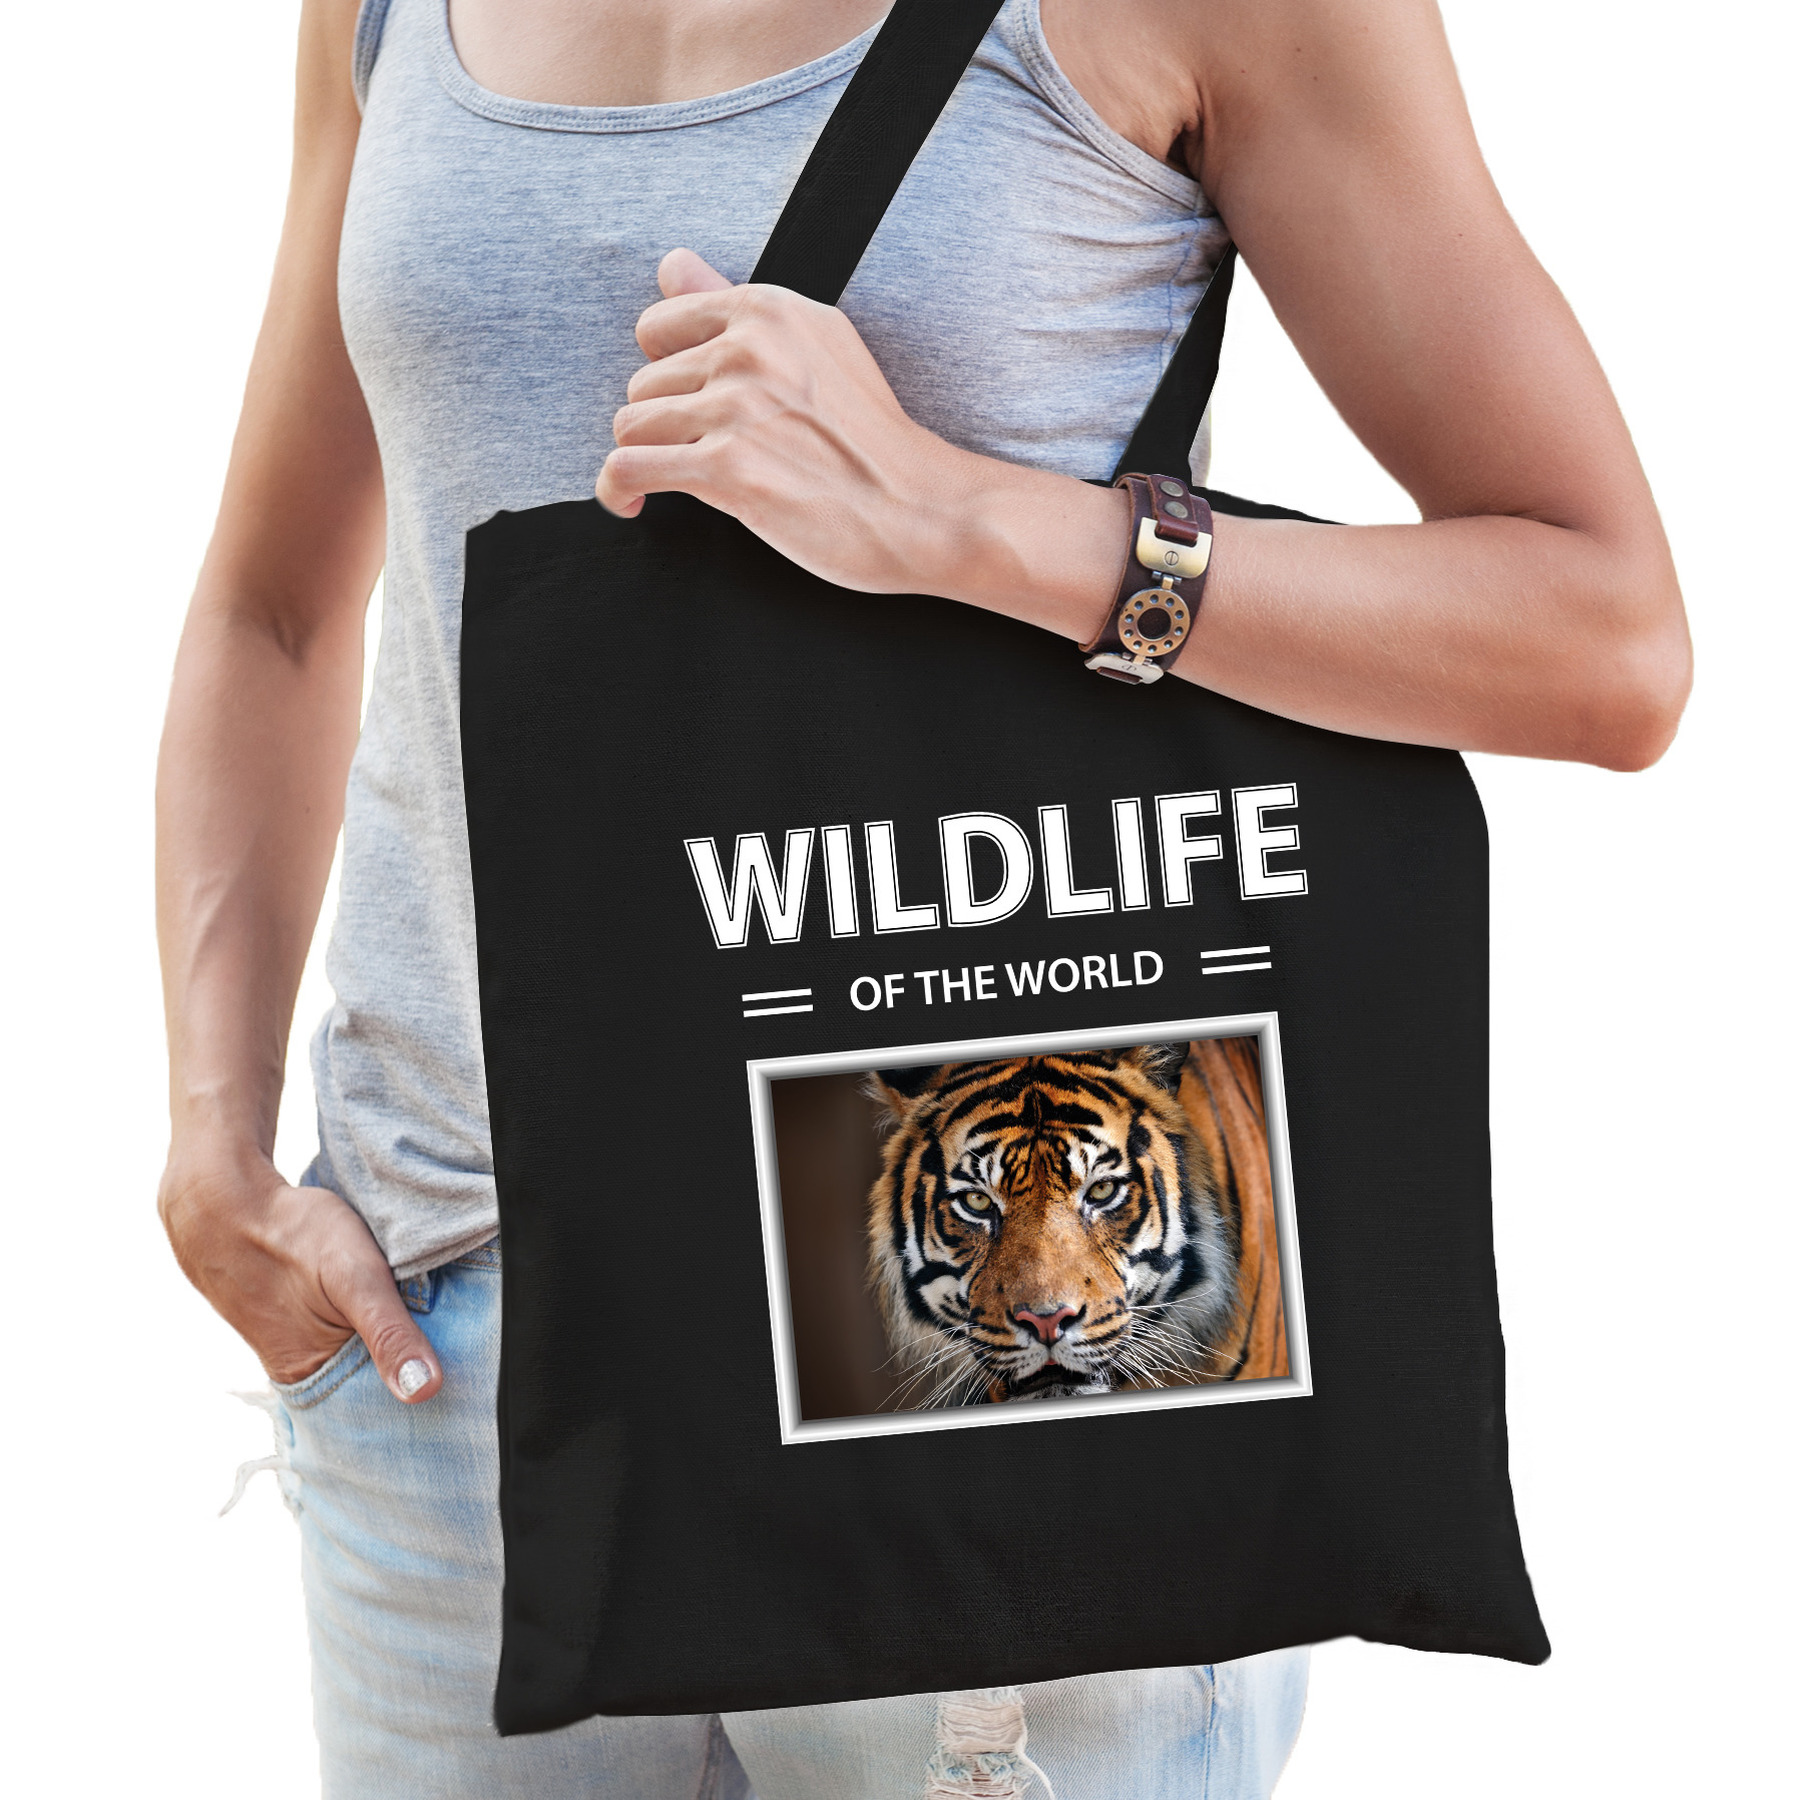 Katoenen tasje tijgers zwart - wildlife of the world tijger cadeau tas